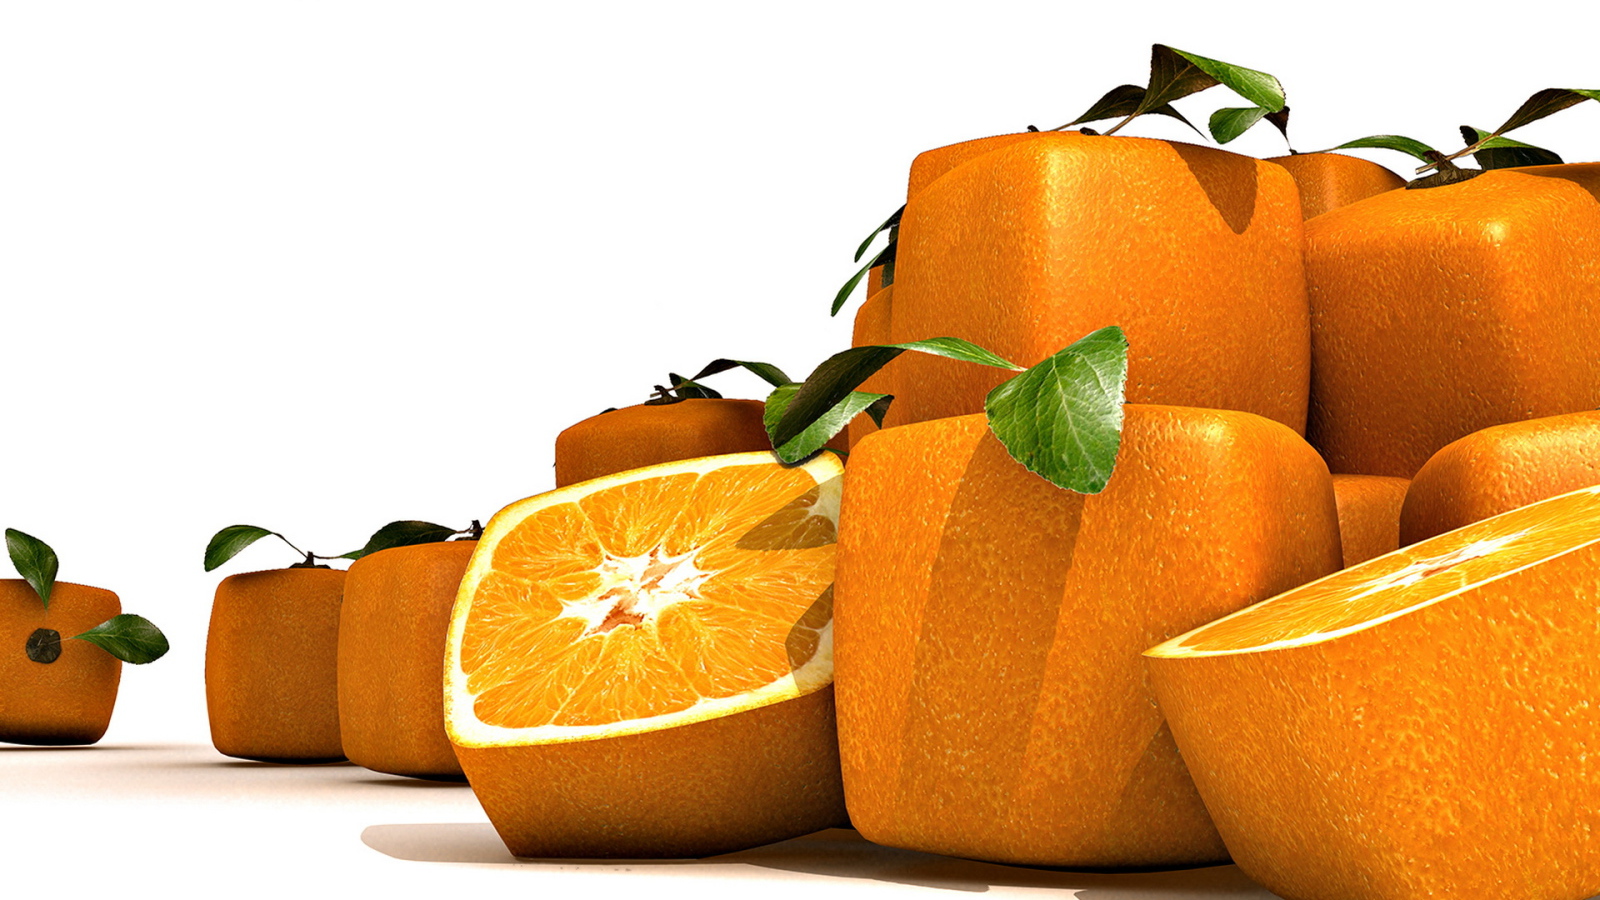 Square oranges.